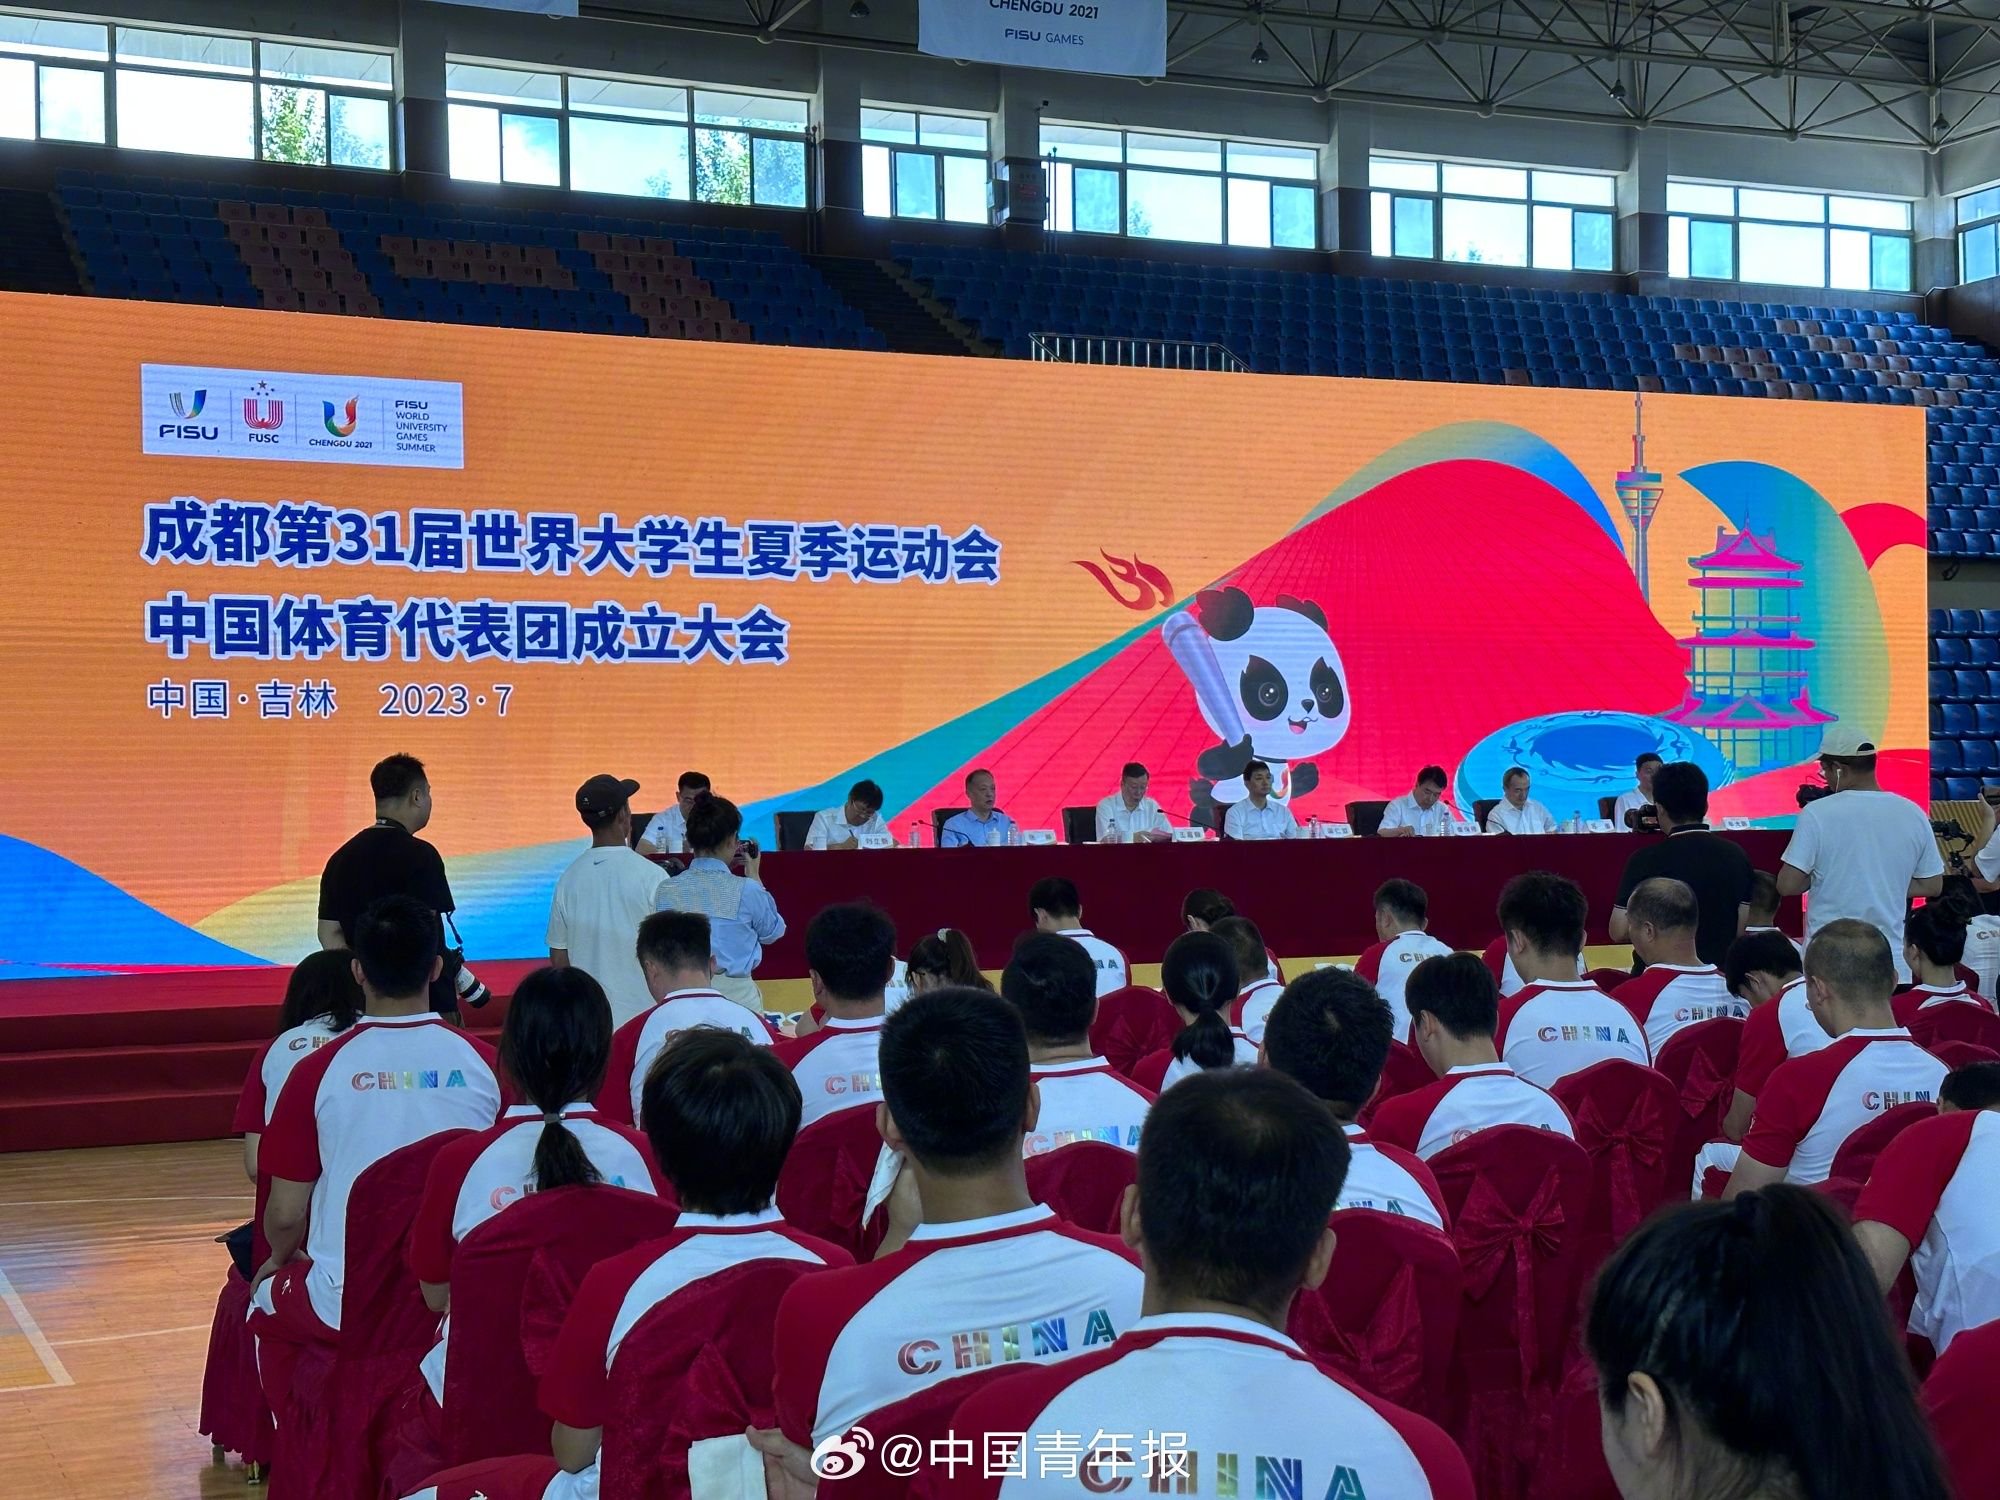 成都大运会中国代表团成立 411名运动员参加 平均年龄22.9岁_原创_新闻首页_红星新闻网